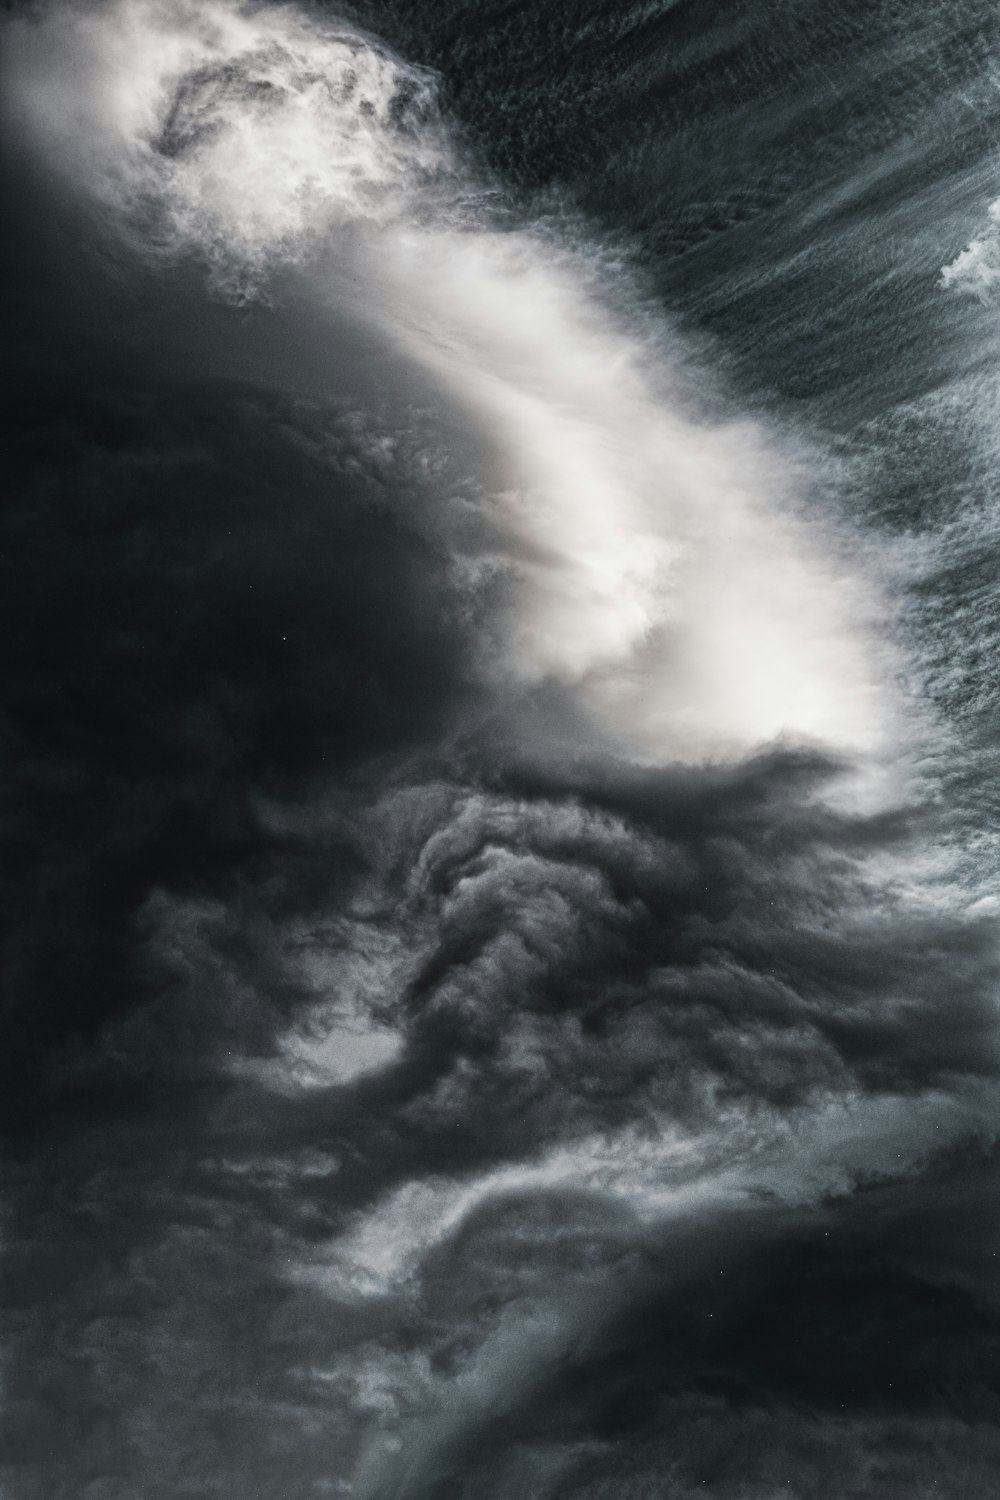 Una foto en blanco y negro de una gran ola